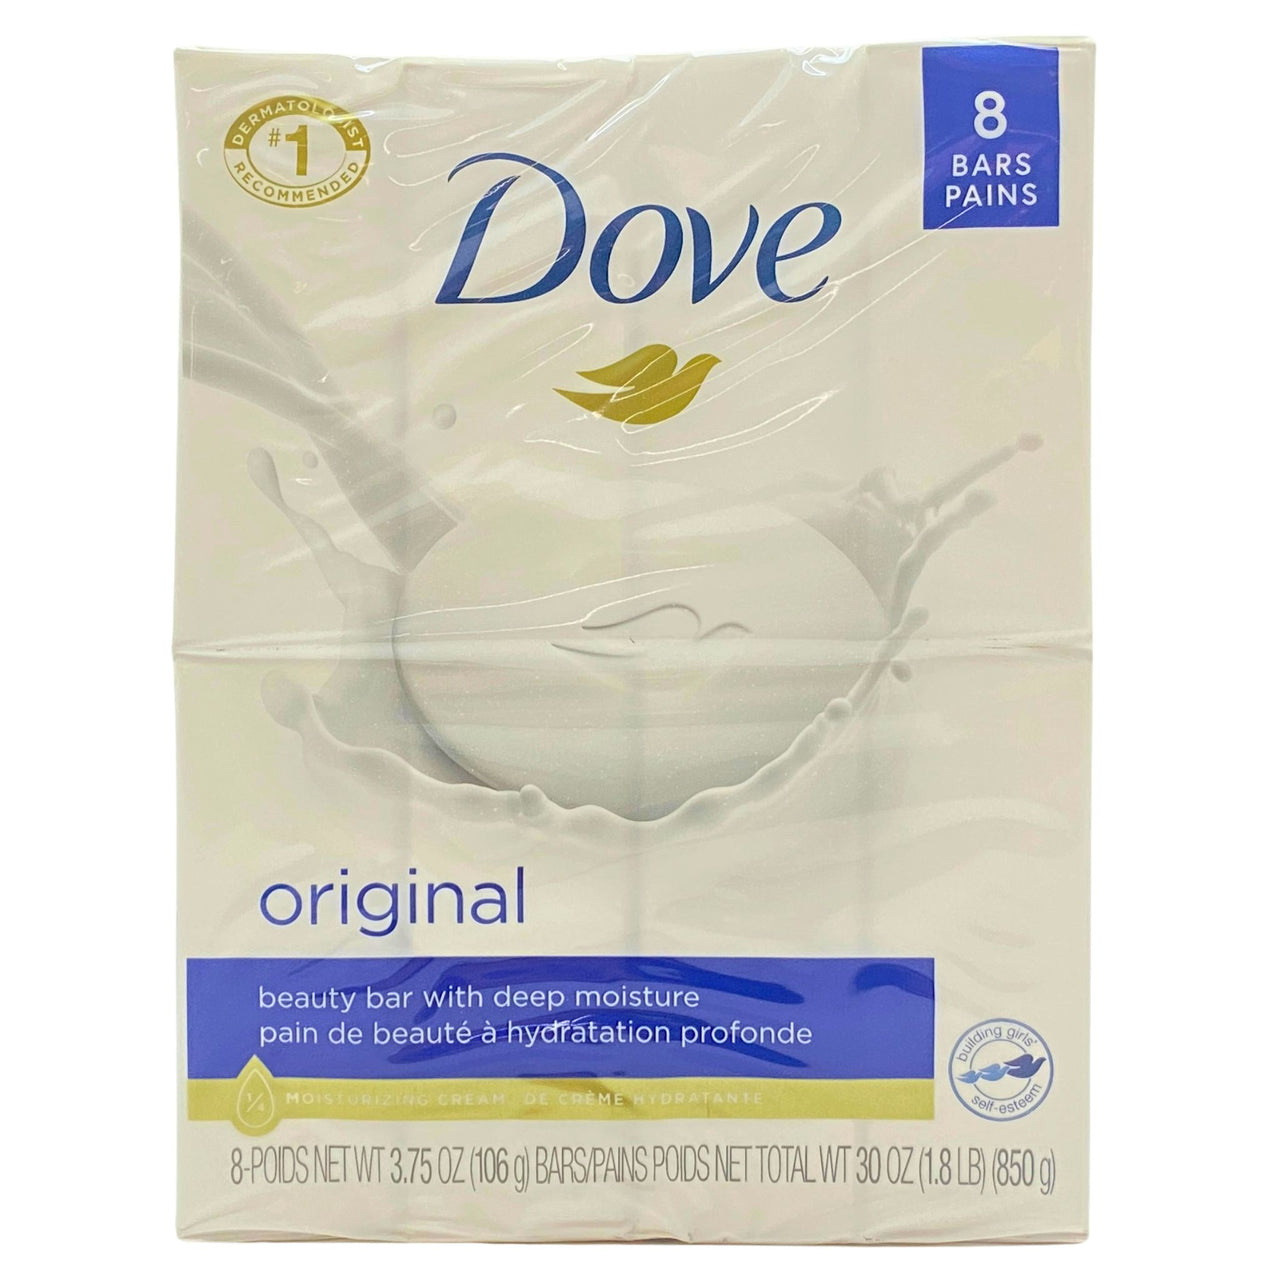 Dove Original Beauty Bar with Deep Moisture 